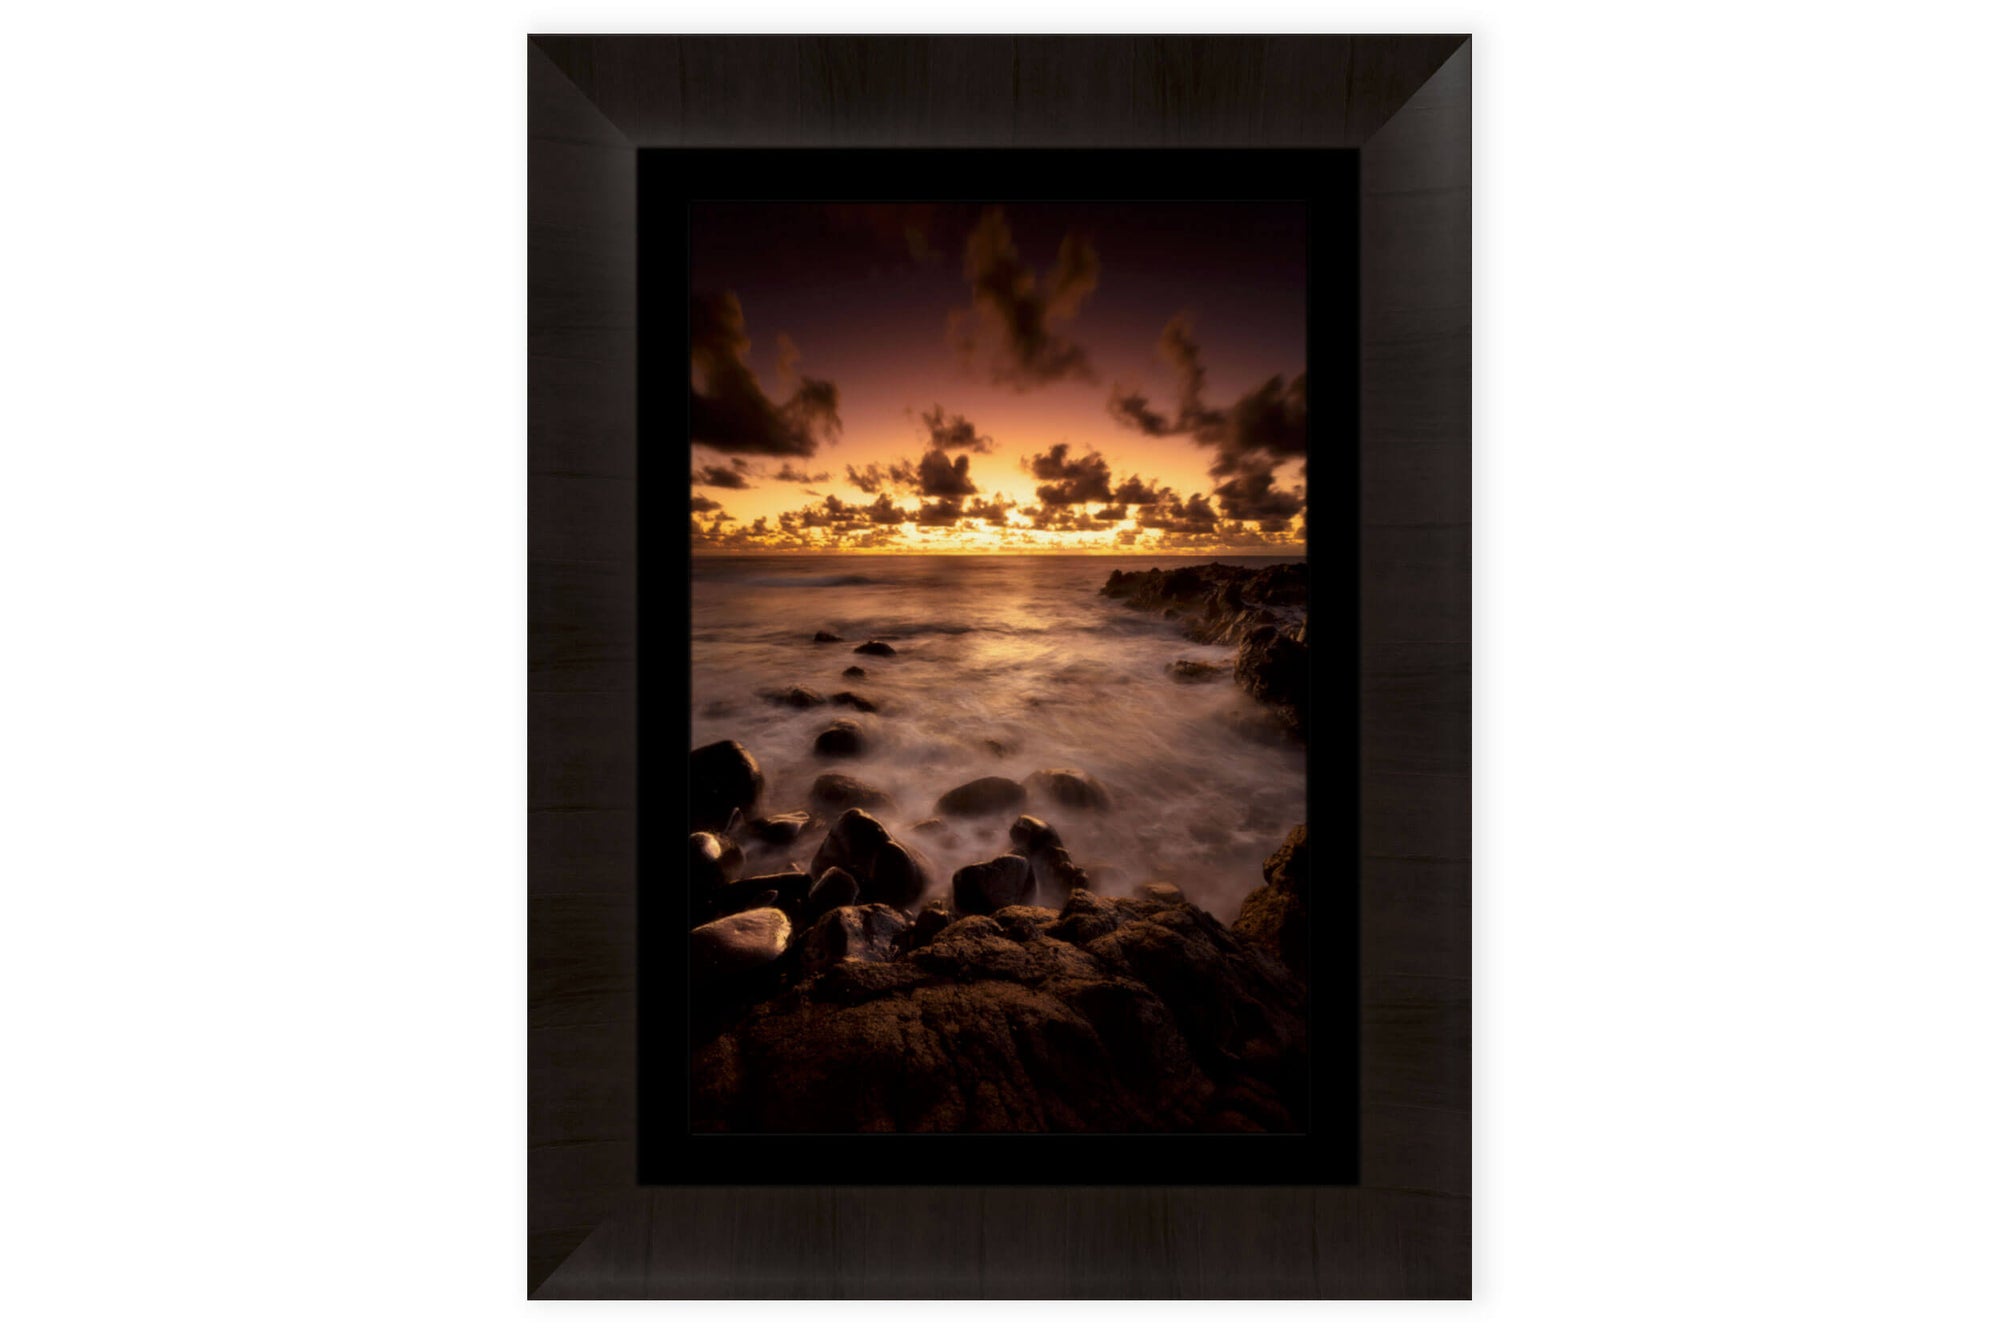 A piece of framed Kauai art shows a Kapaa sunrise picture.